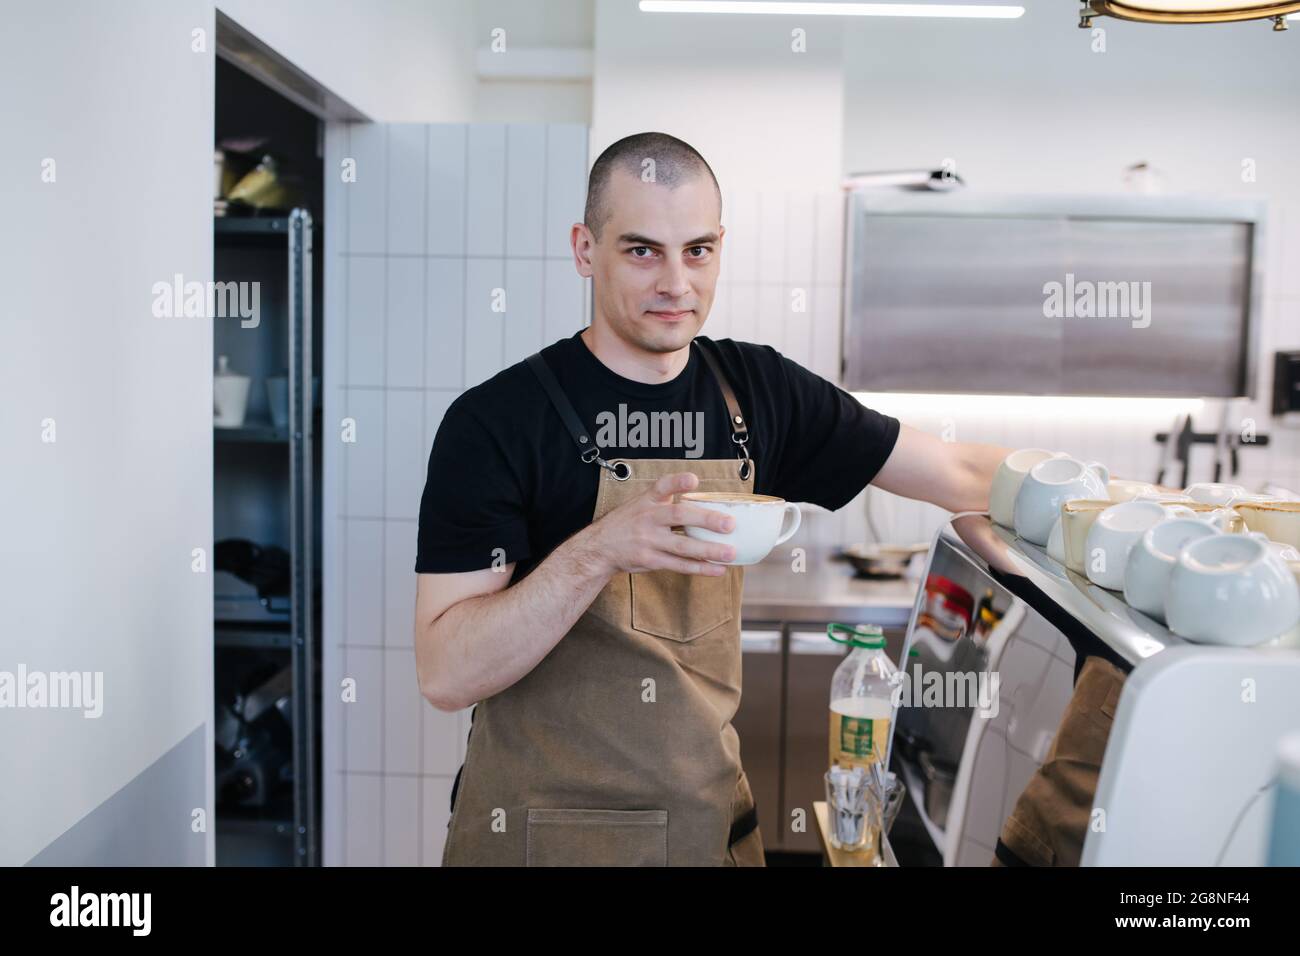 Portrait d'un boulanger masculin audacieux posé avec une tasse de café dans les mains. Dans une cuisine de boulangerie désordonnée. Regarder la caméra. Banque D'Images